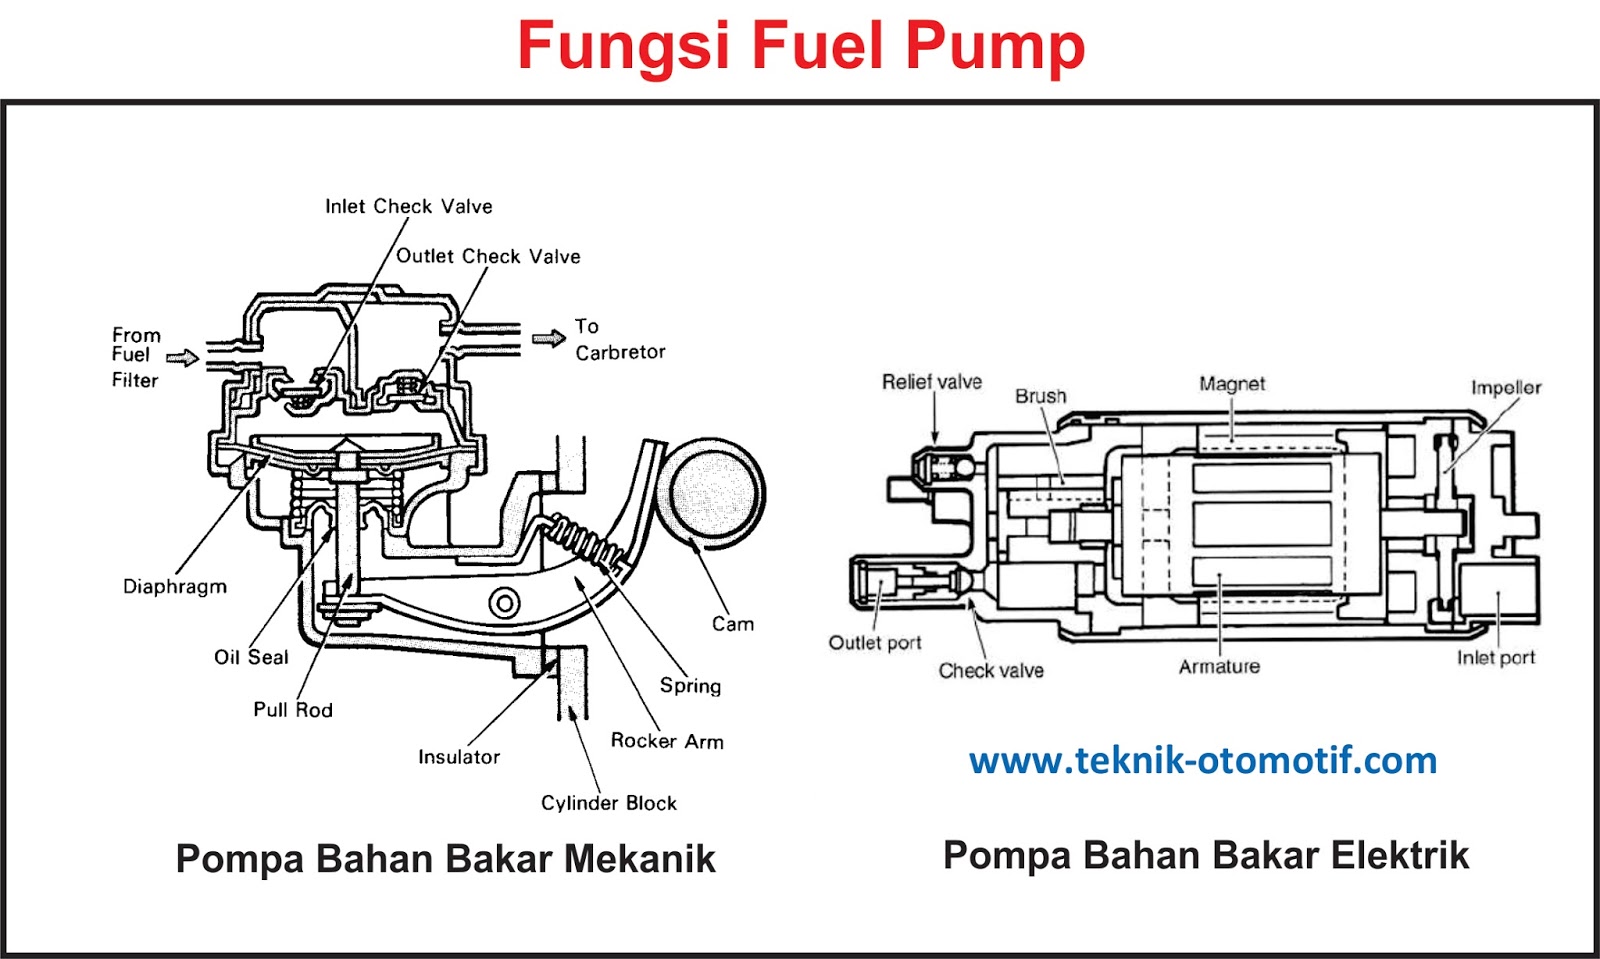 Fungsi pompa bahan bakar mekanik dan pompa bahan bakar listrik adalah